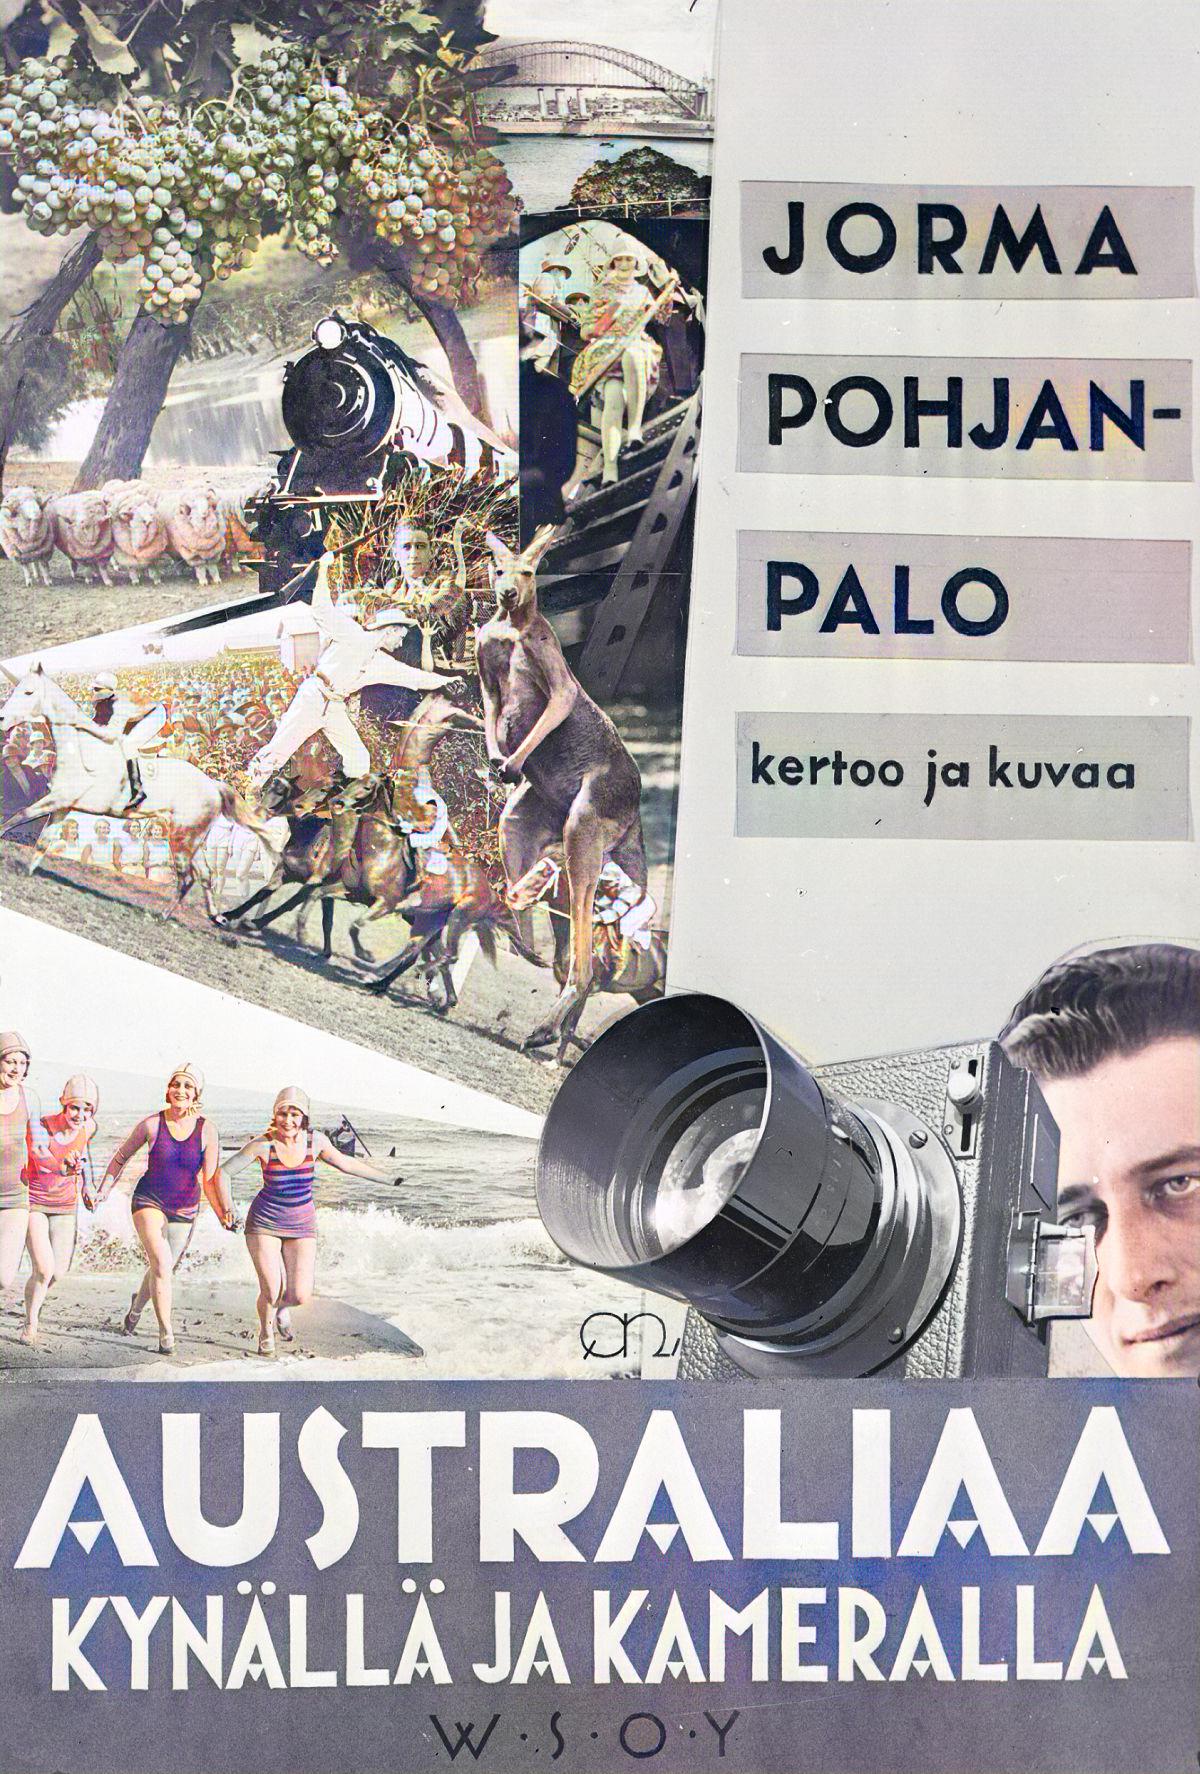 Jorma Pohjanpalo : Australiaa kynällä ja kameralla